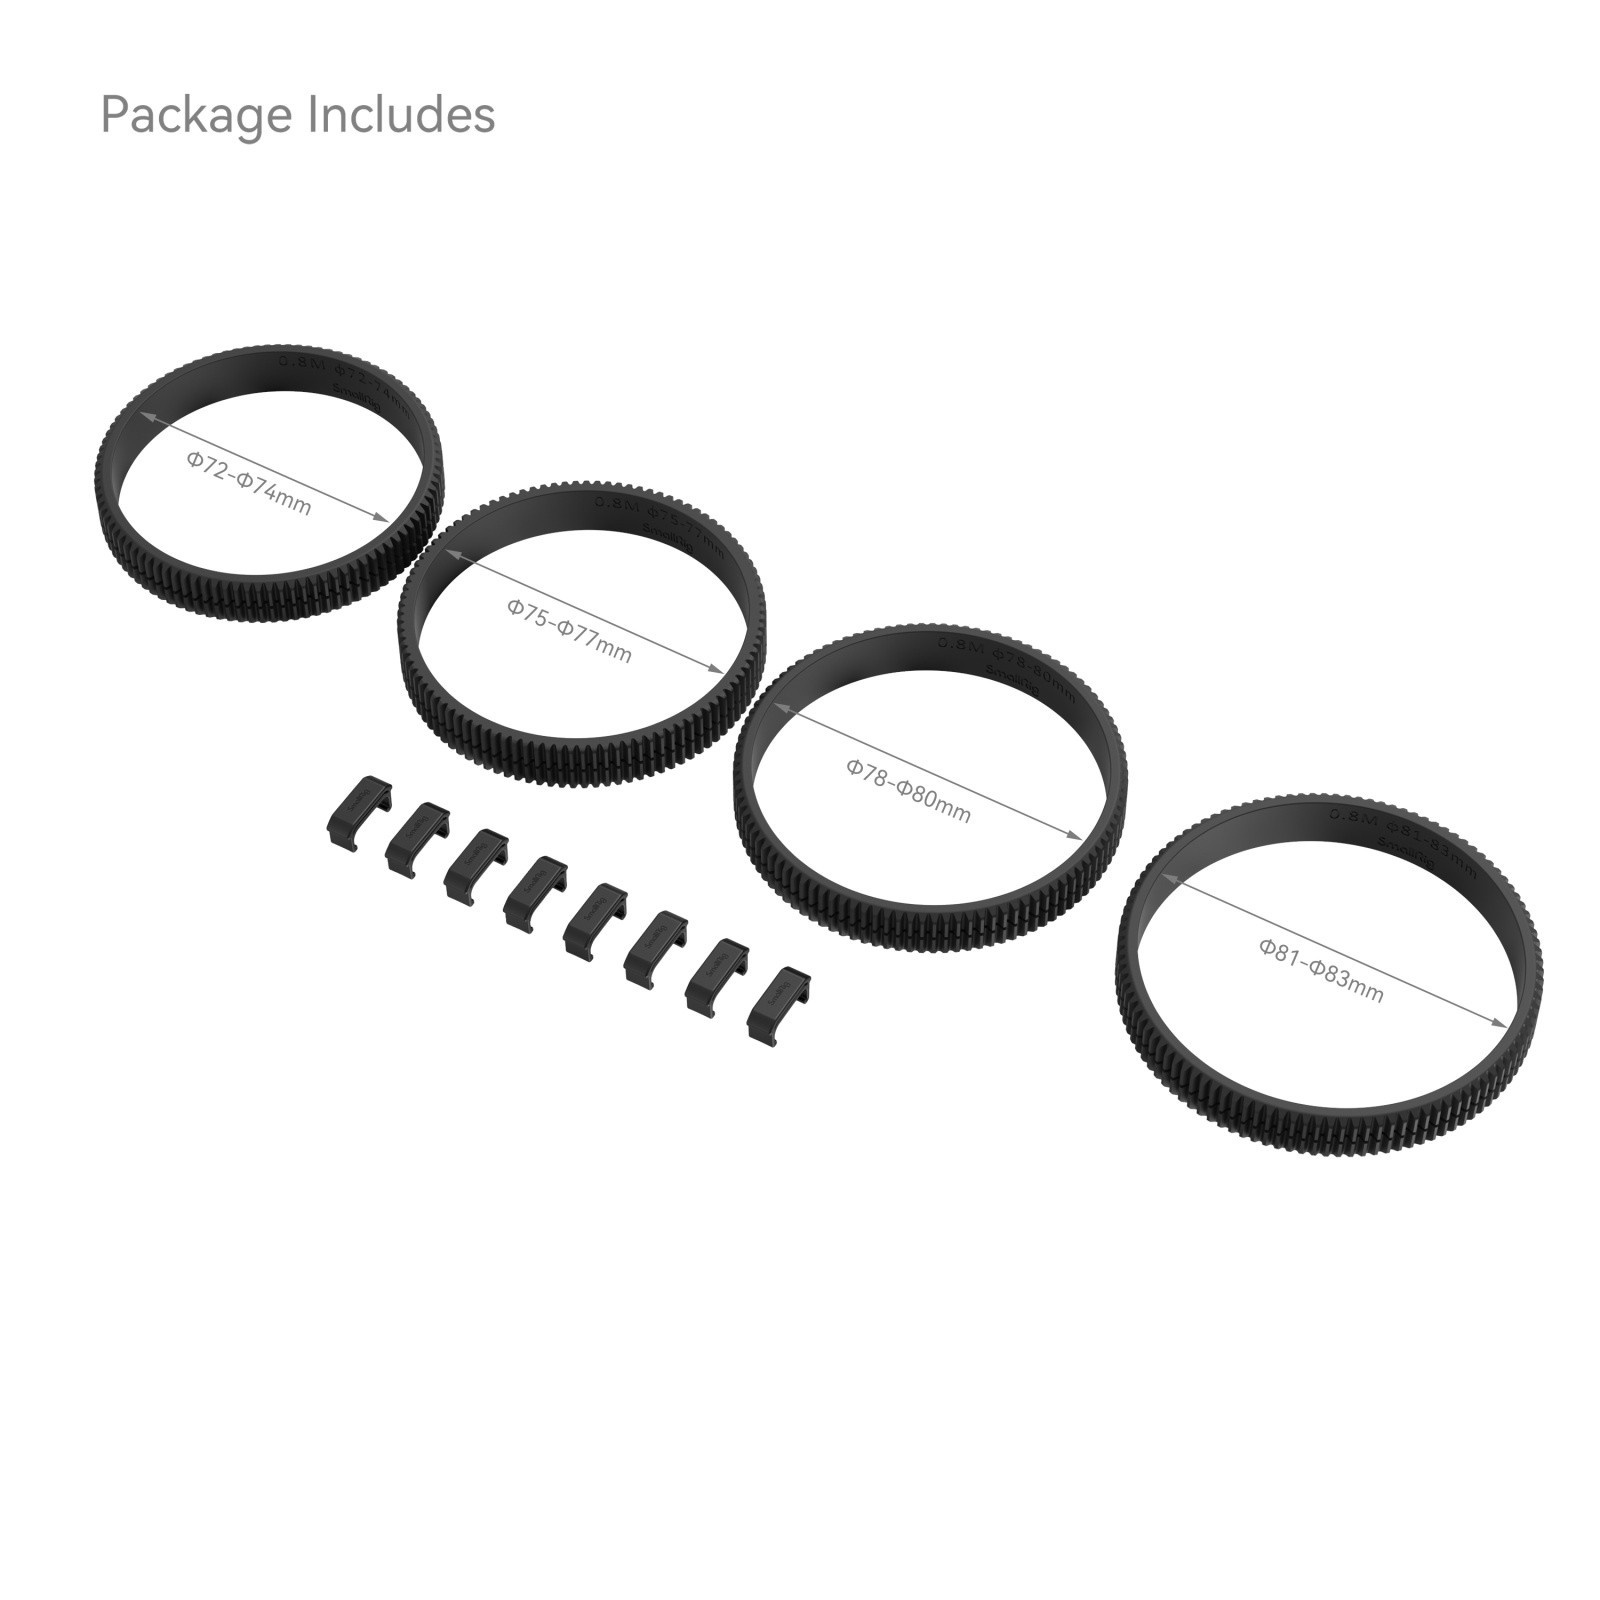 SmallRig 4187 72-74mm / 75-77mm / 78-80mm / 81-83mm Seamless Focus Gear Ring Kit